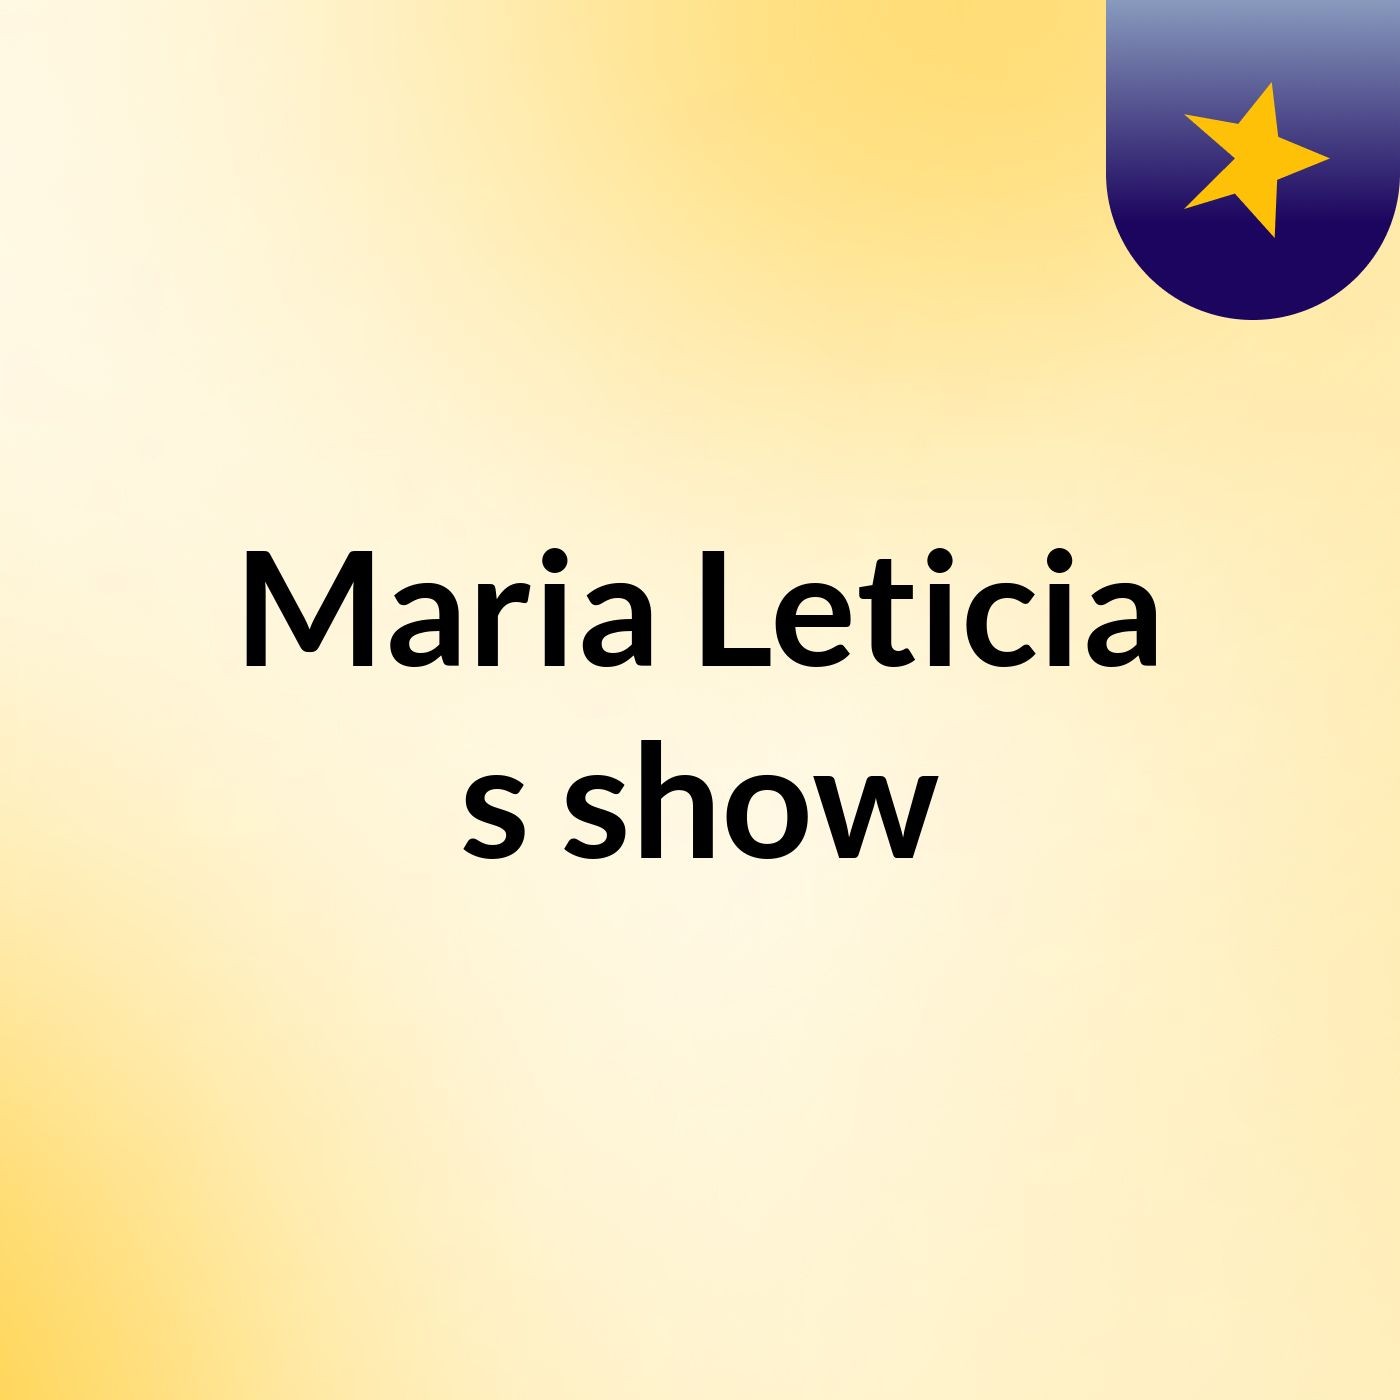 Maria Leticia's show